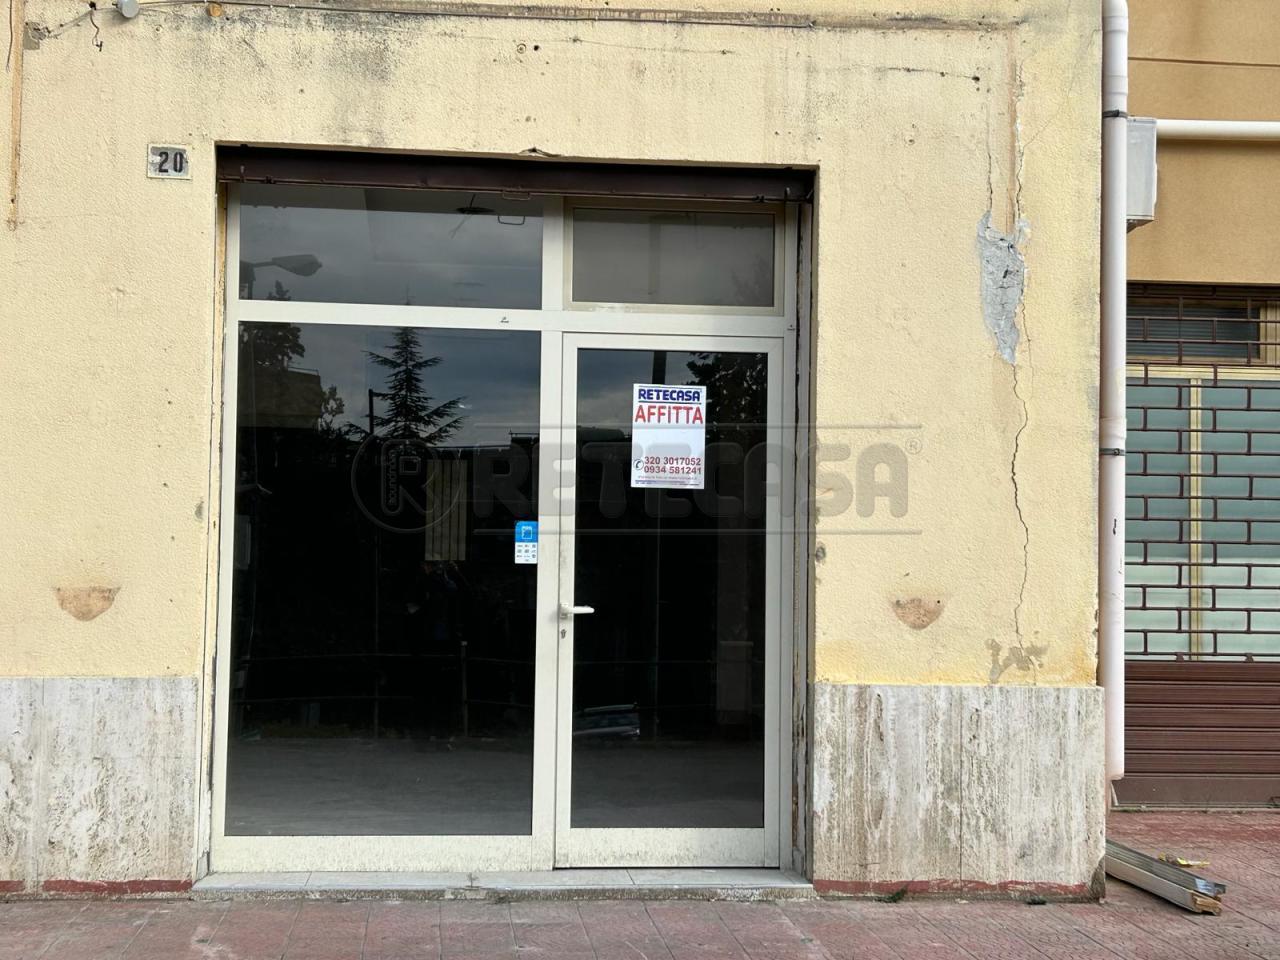 Negozio / Locale in affitto a Caltanissetta, 2 locali, prezzo € 550 | PortaleAgenzieImmobiliari.it